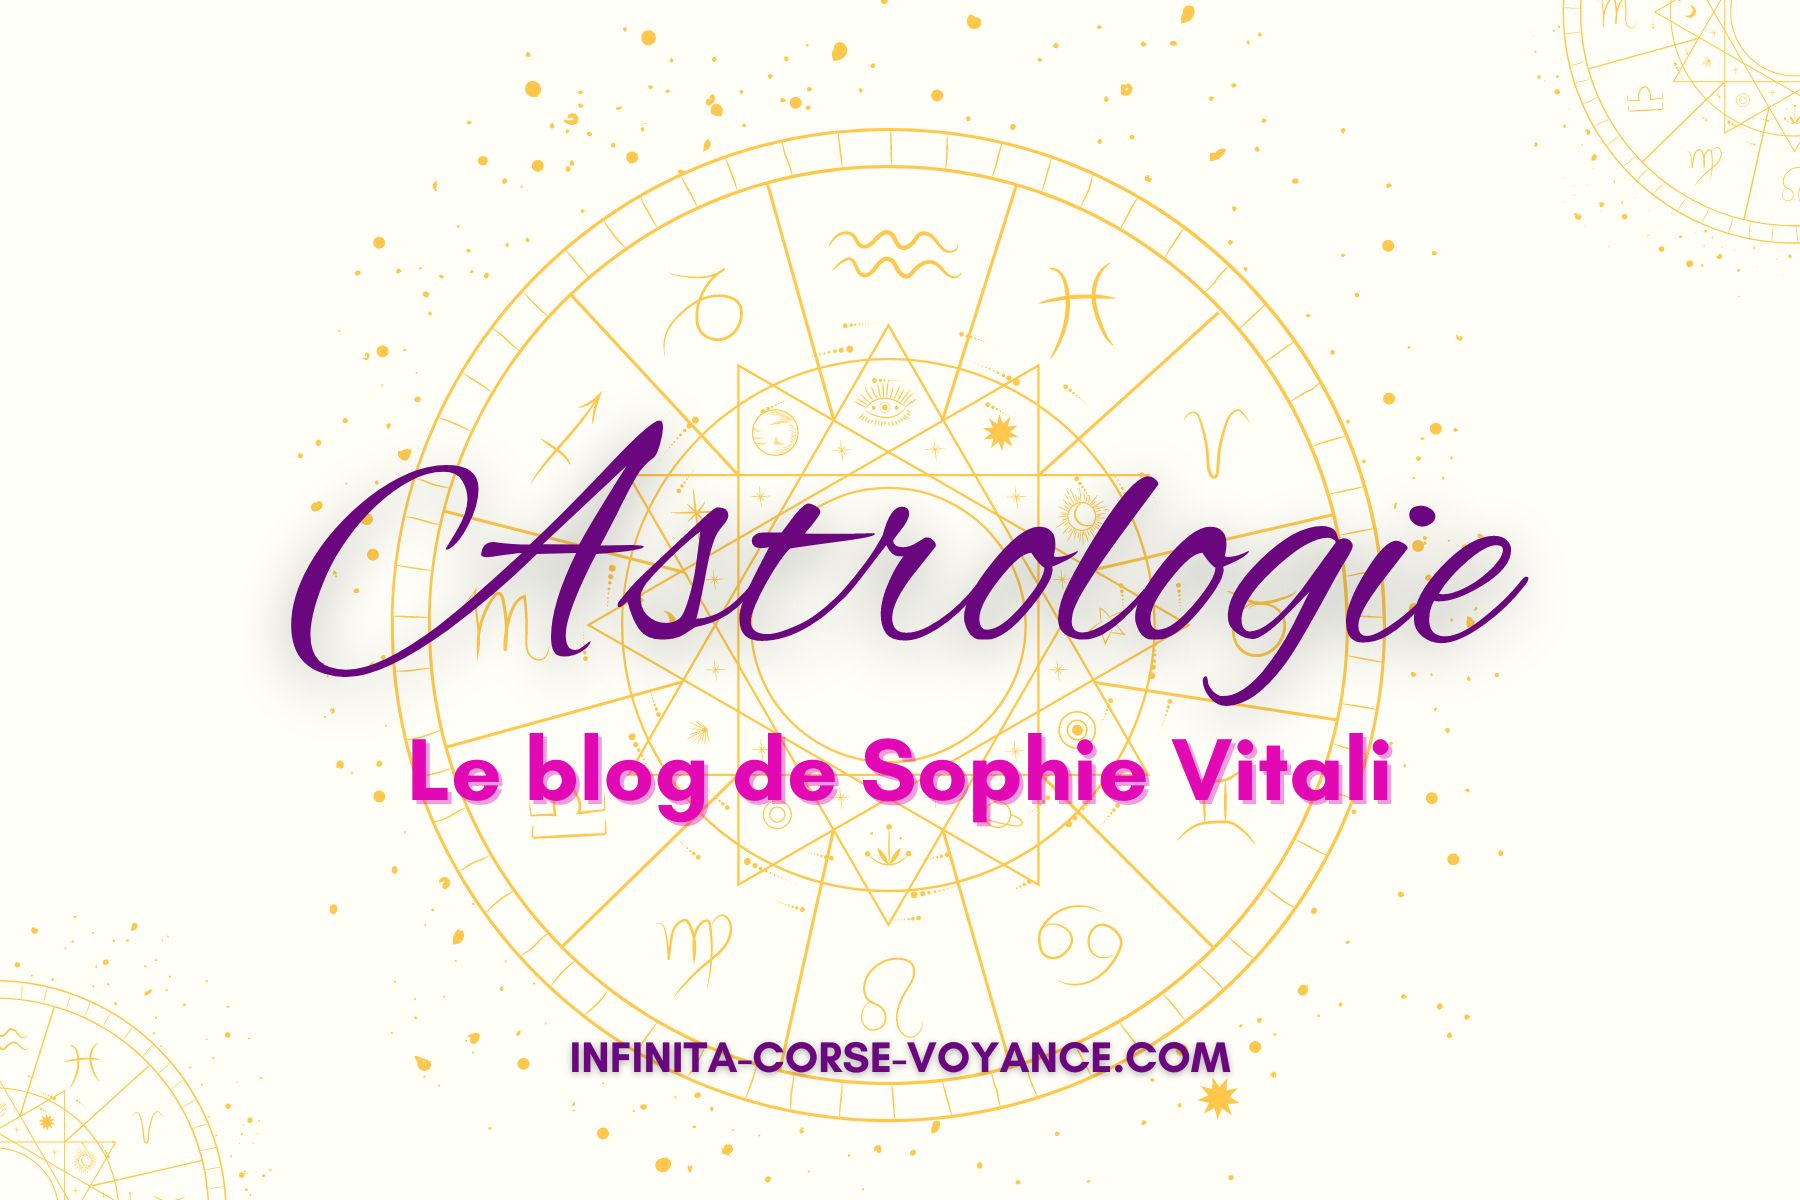 Découvrez l'Univers de l'Astrologie sur Infinità Corse Voyance avec Sophie Vitali célèbre médium et voyante